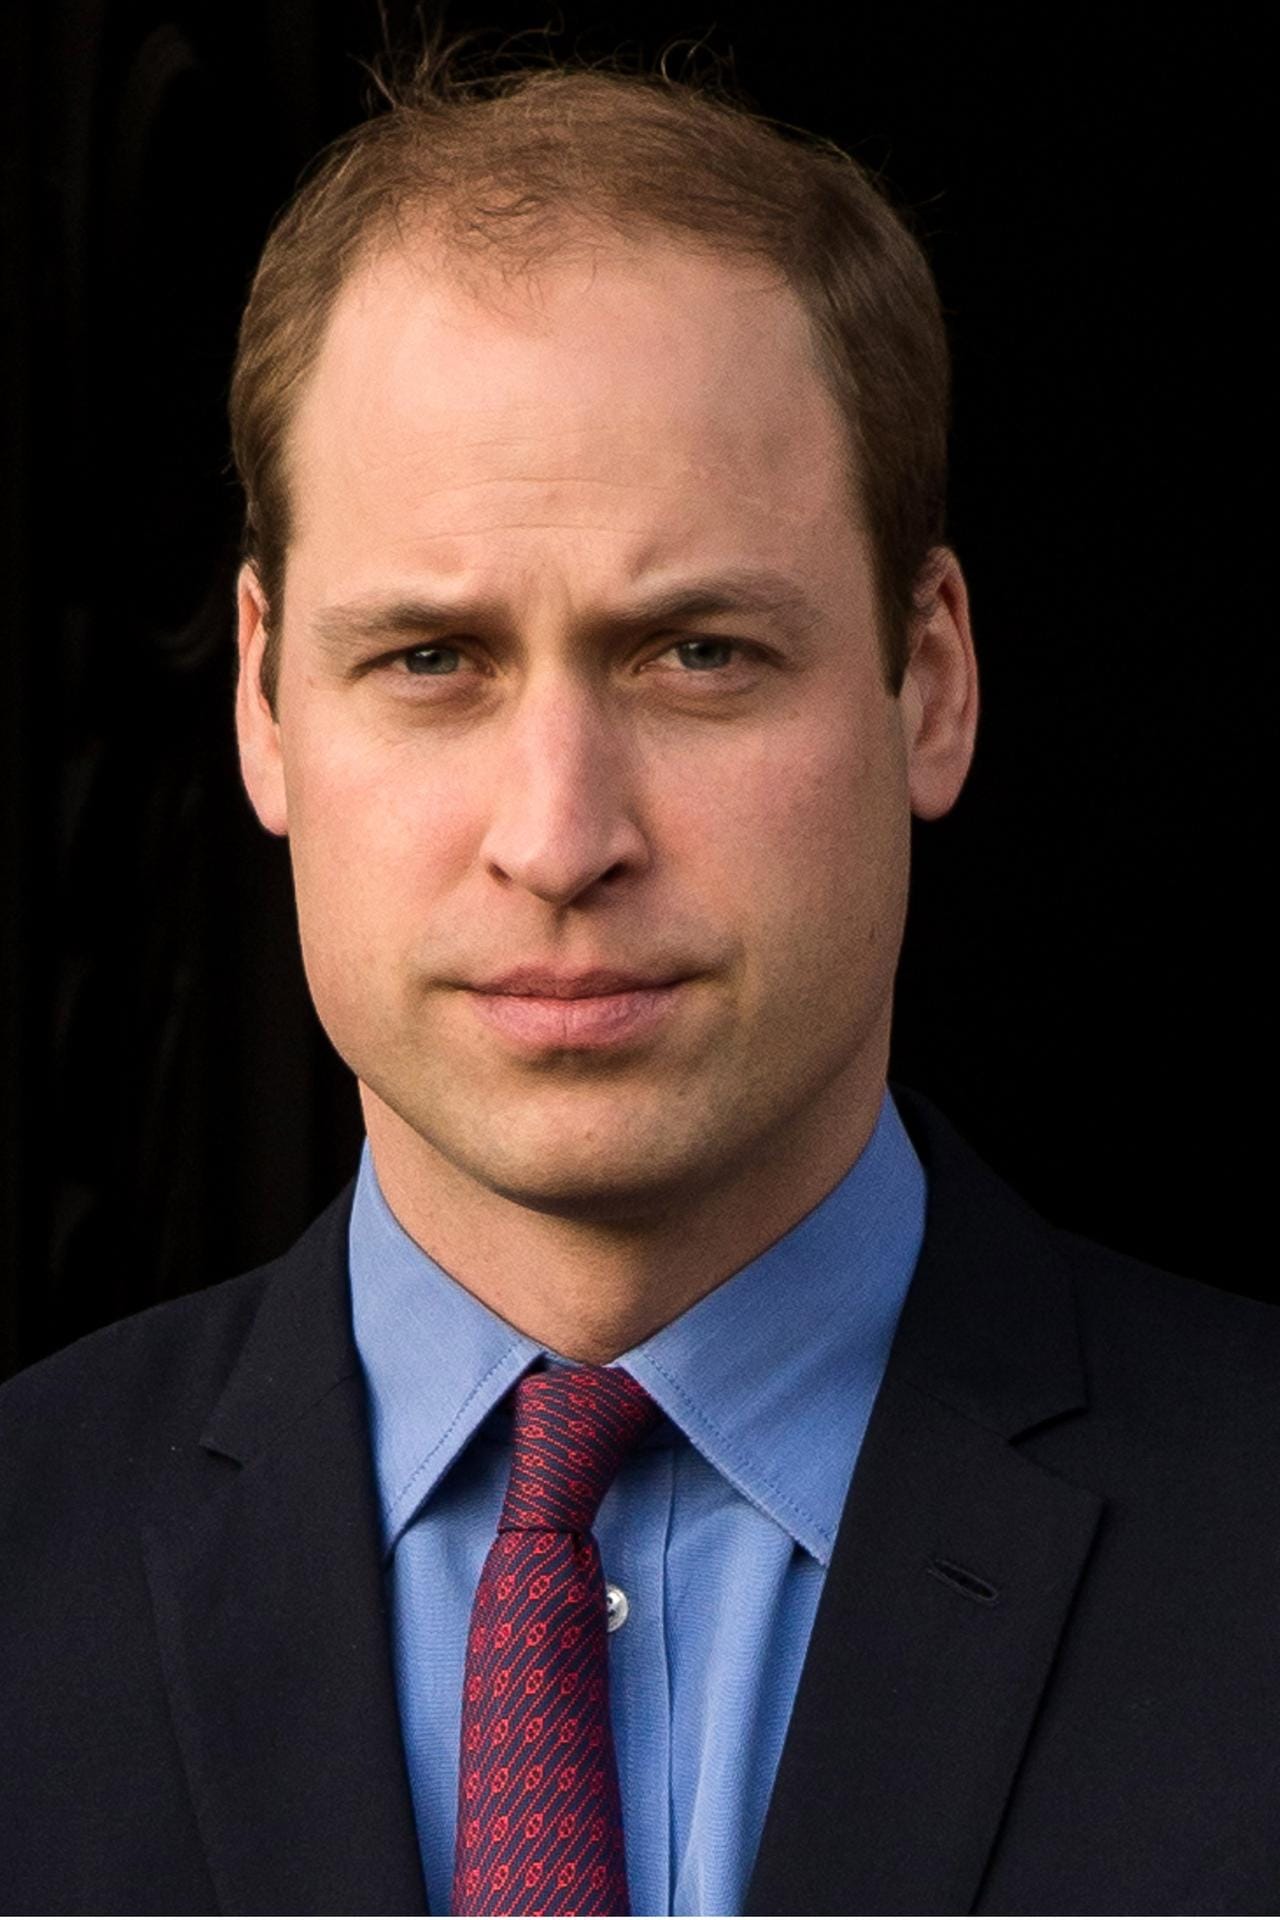 Prinz William (geboren 1982): Der "Duke of Cambridge" ist der älteste Sohn von Prinz Charles